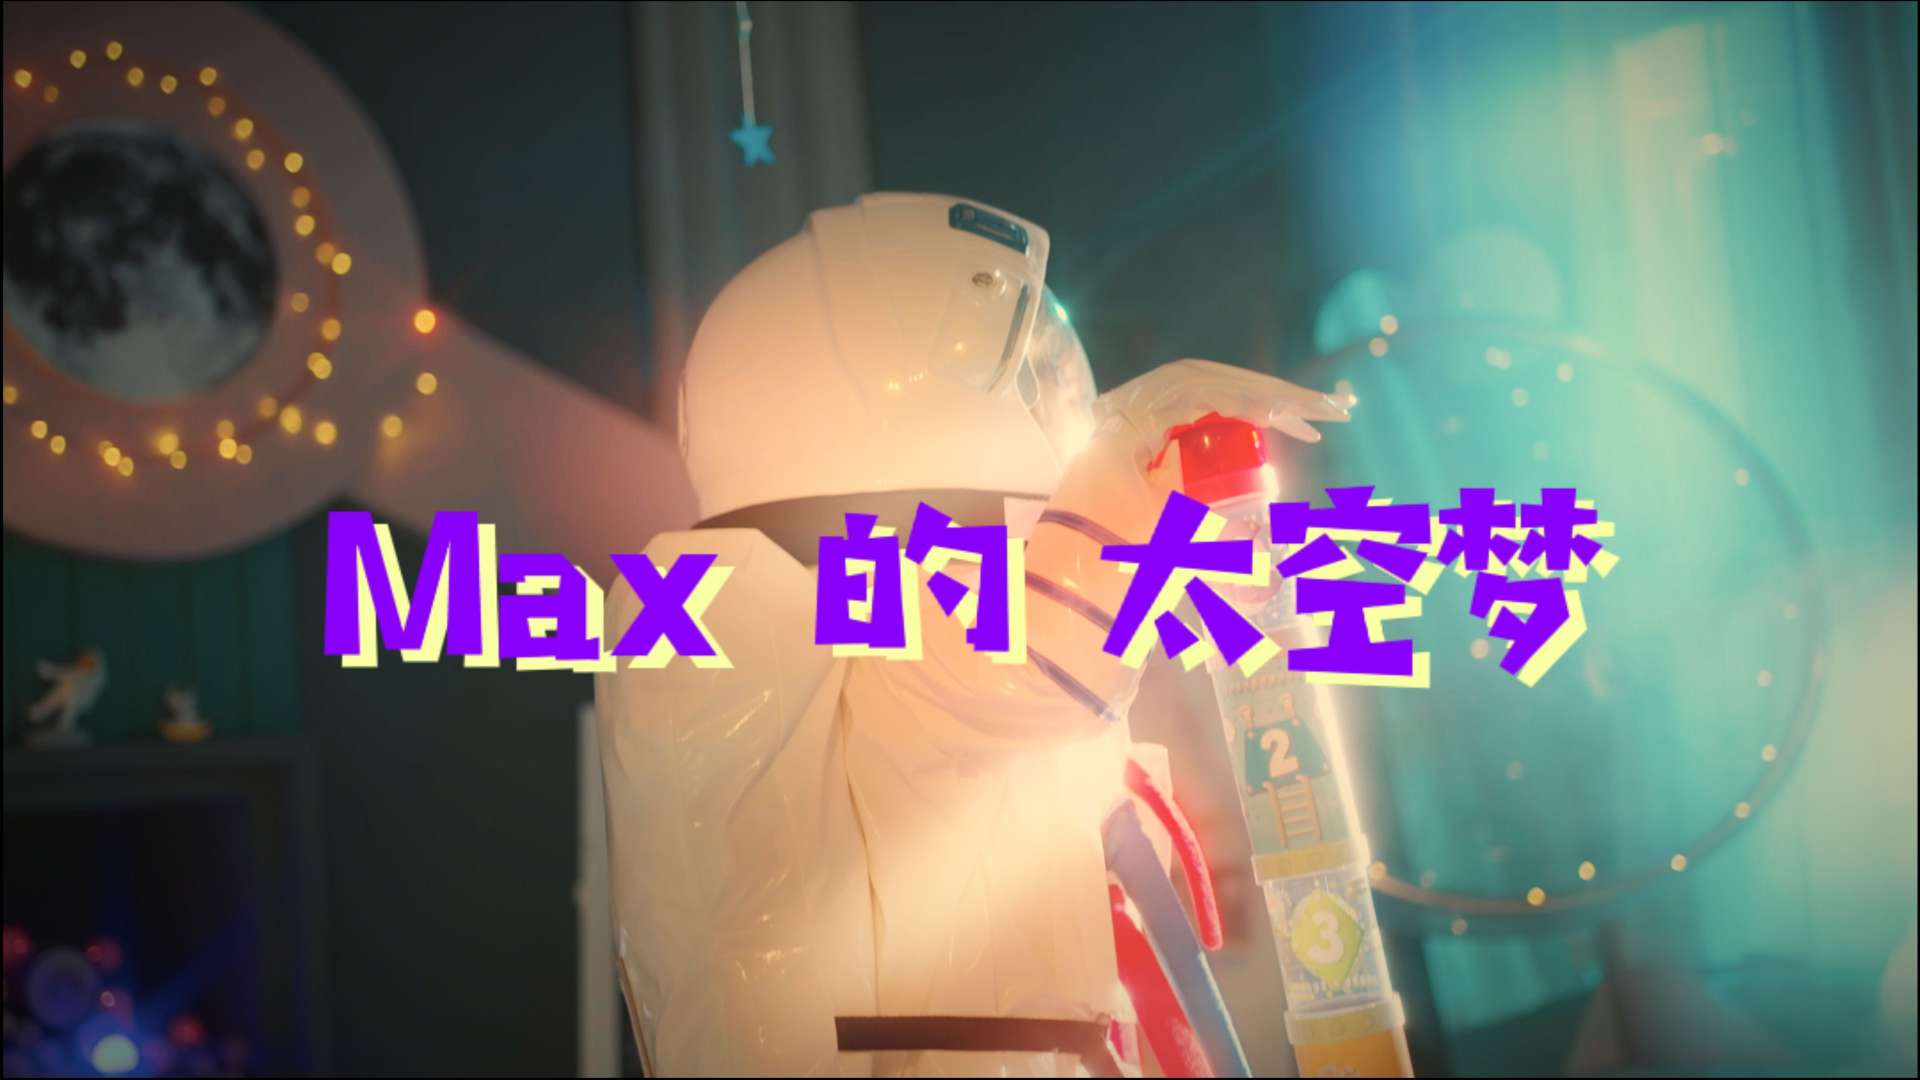 Max的太空梦